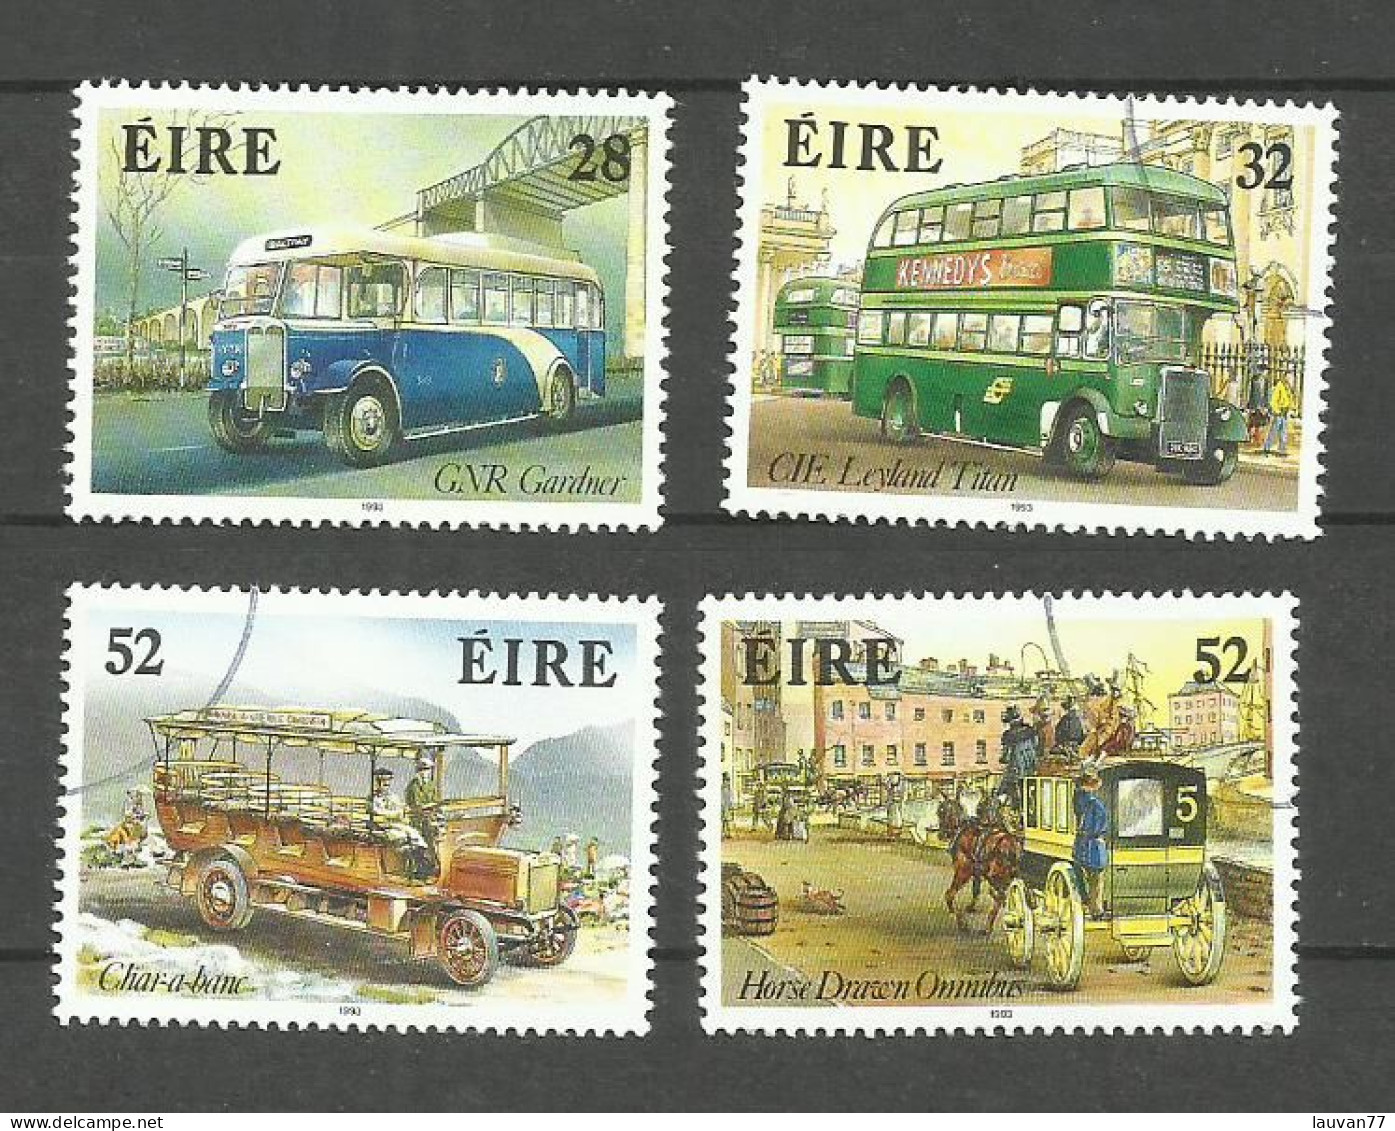 Irlande N°838 à 841  Cote 6.25€ - Used Stamps